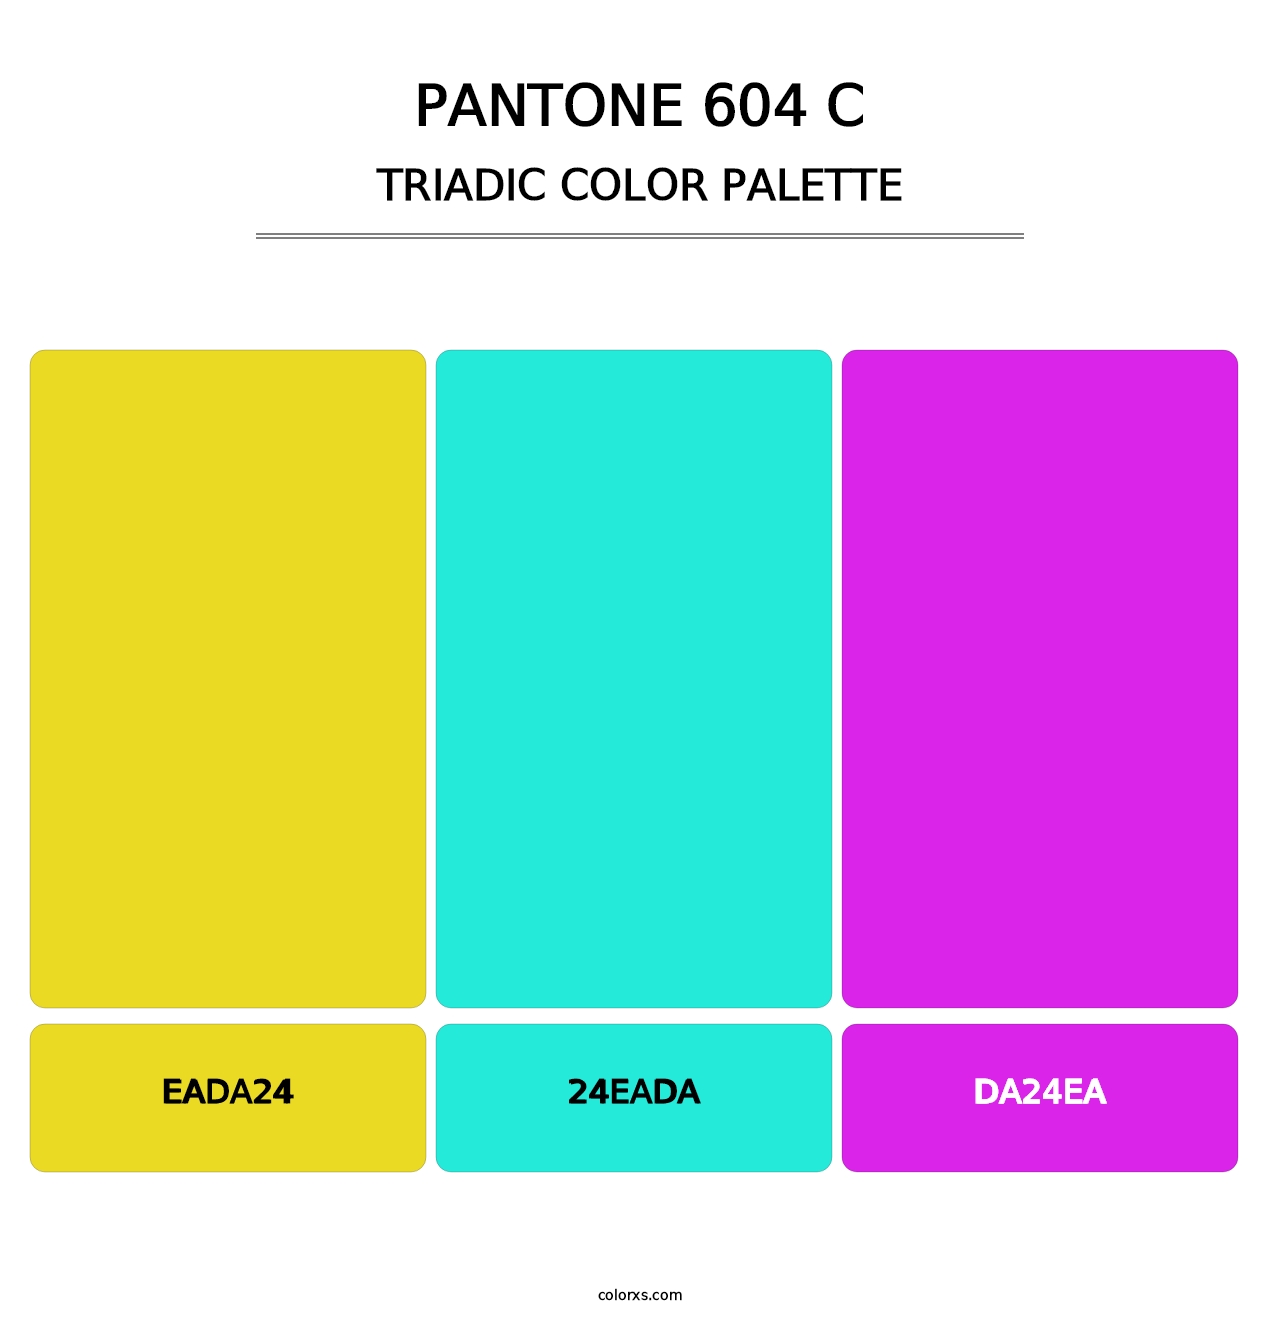 PANTONE 604 C - Triadic Color Palette